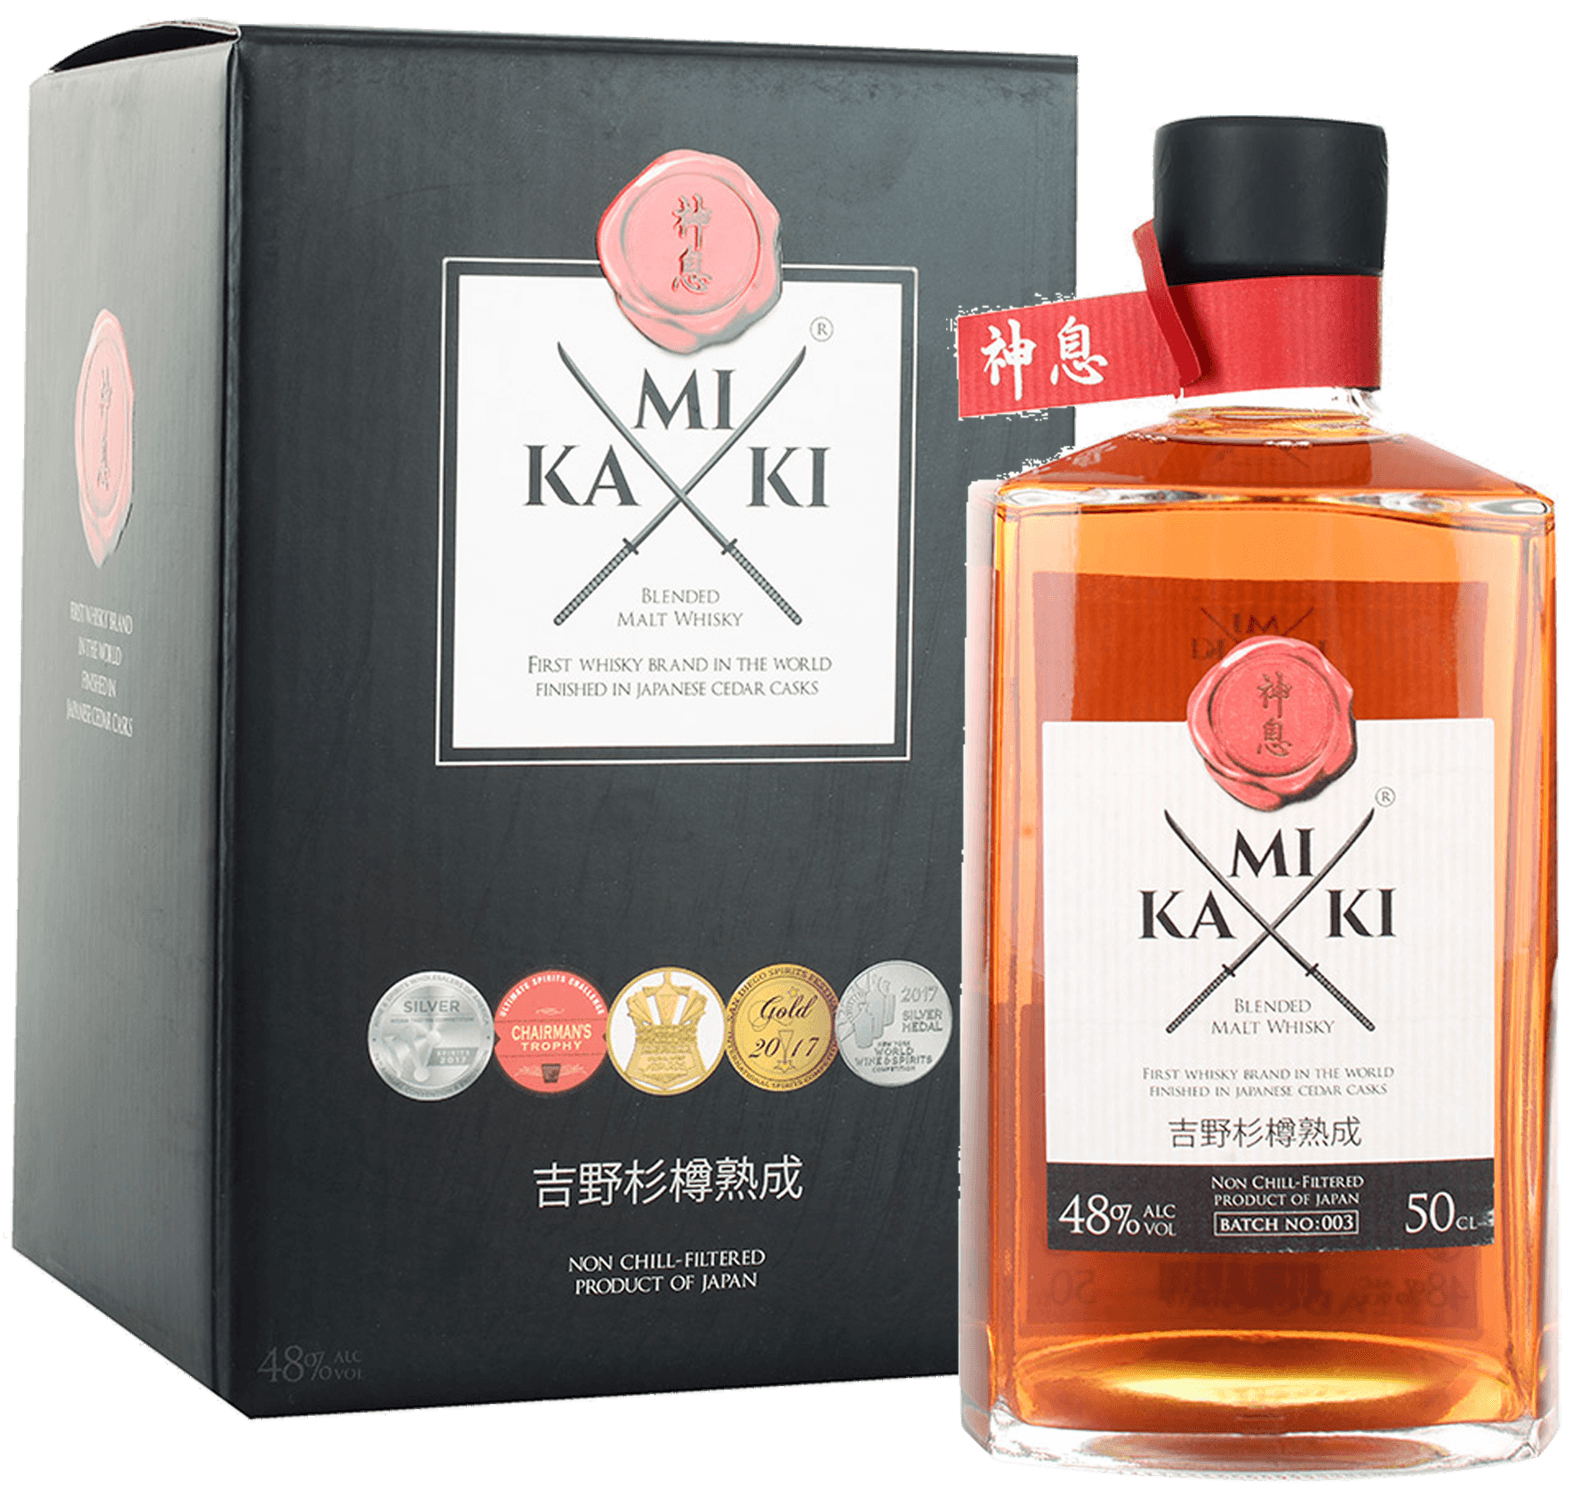 Kamiki Blended Malt Whisky (gift box) the naked grouse blended malt scotch whisky gift box